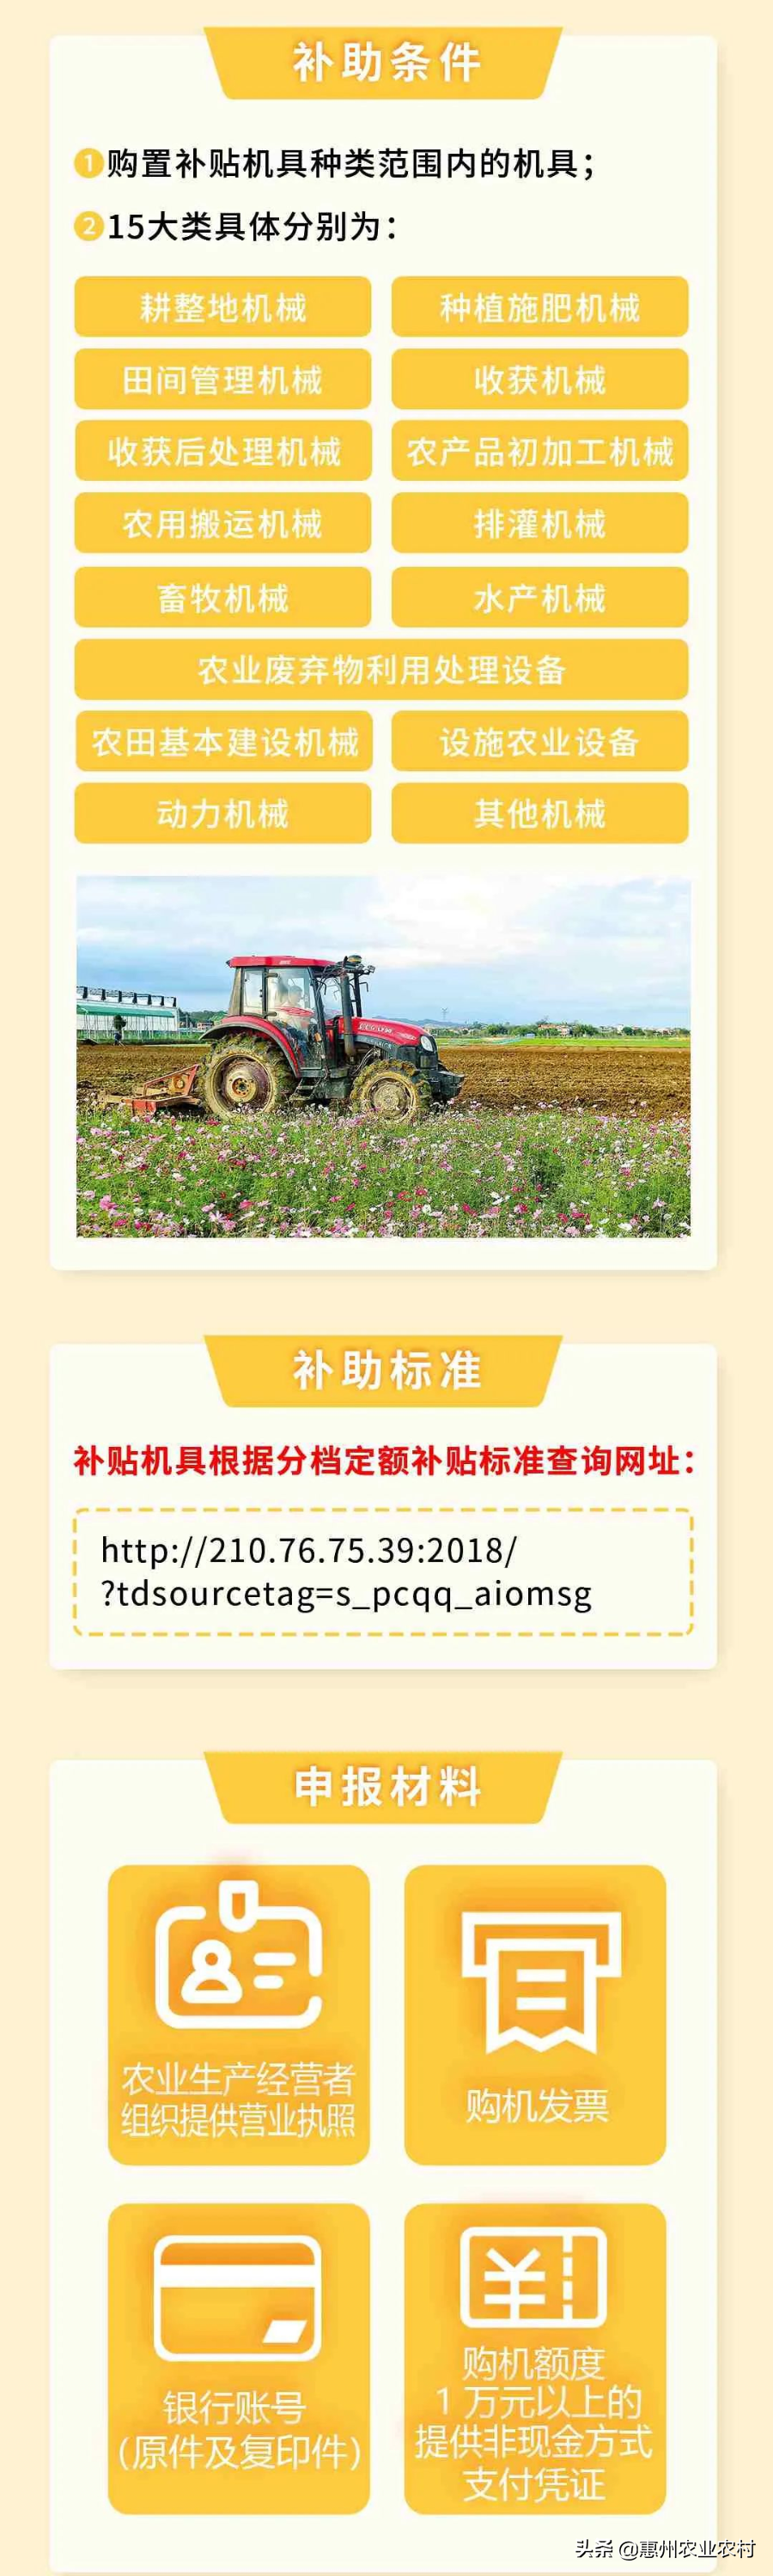 @惠州农业企业 中央财政农机购置补贴这样申请补助